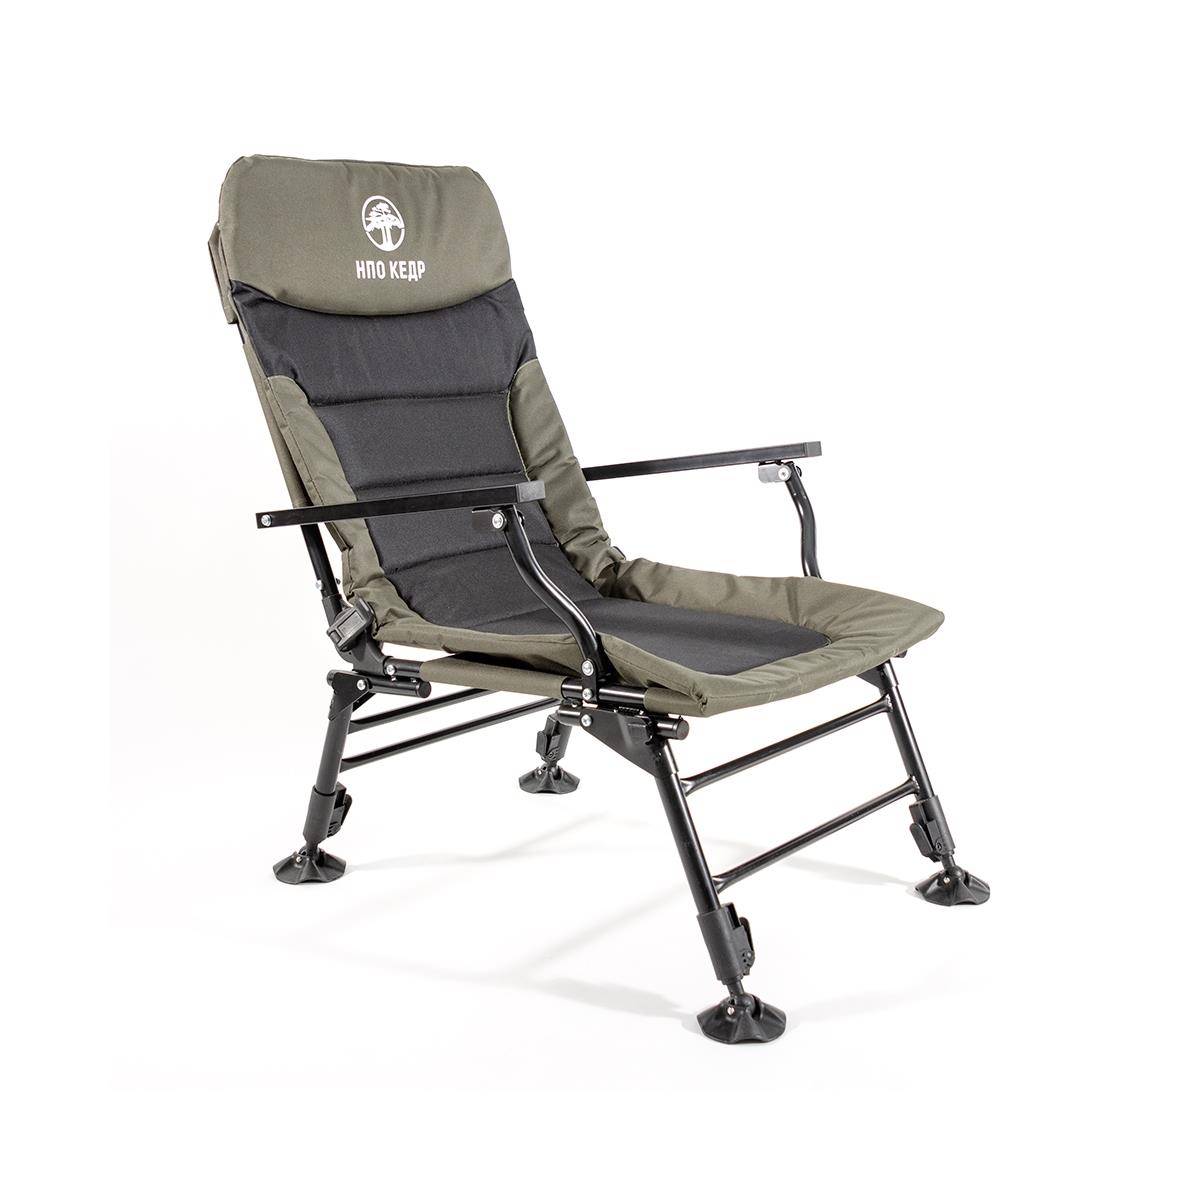 Кресло карповое с подлокотниками (SKC-01)  Кедр кресло карповое без подлокотников skc 02 кедр